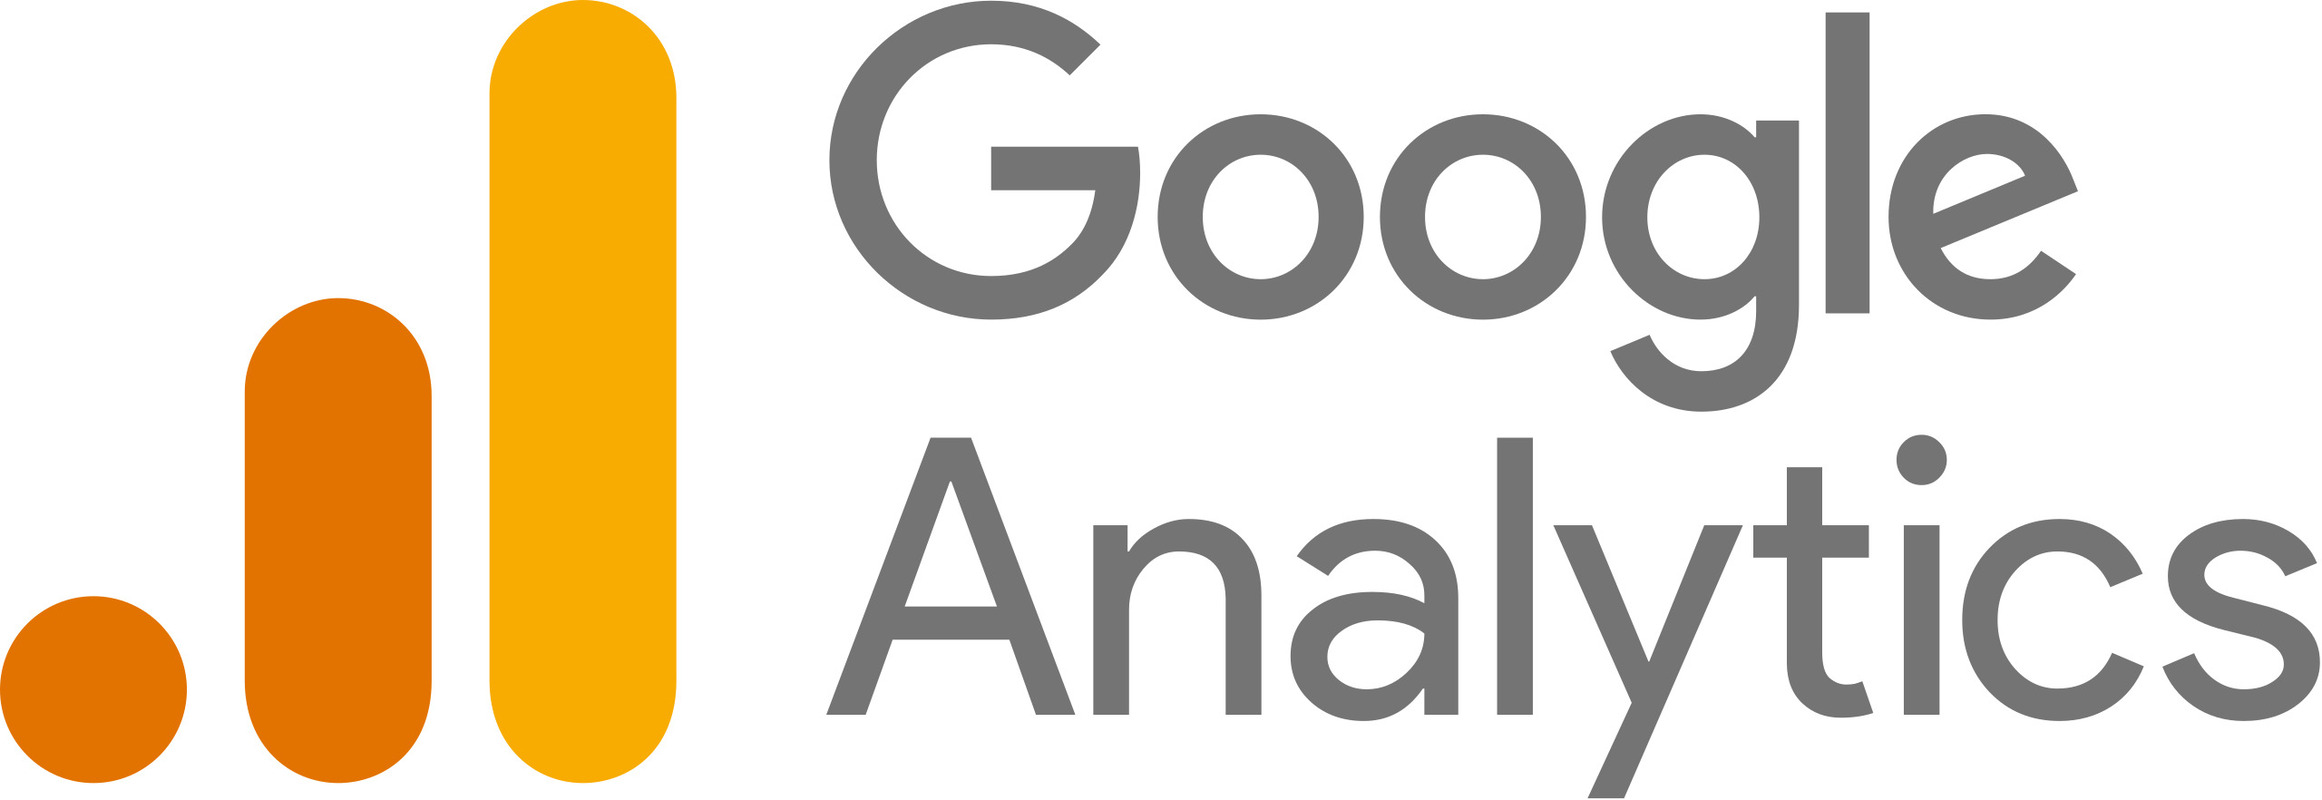 Google Analytics là một trong những công cụ phân tích website và đánh giá hiệu quả các chiến dịch SEO